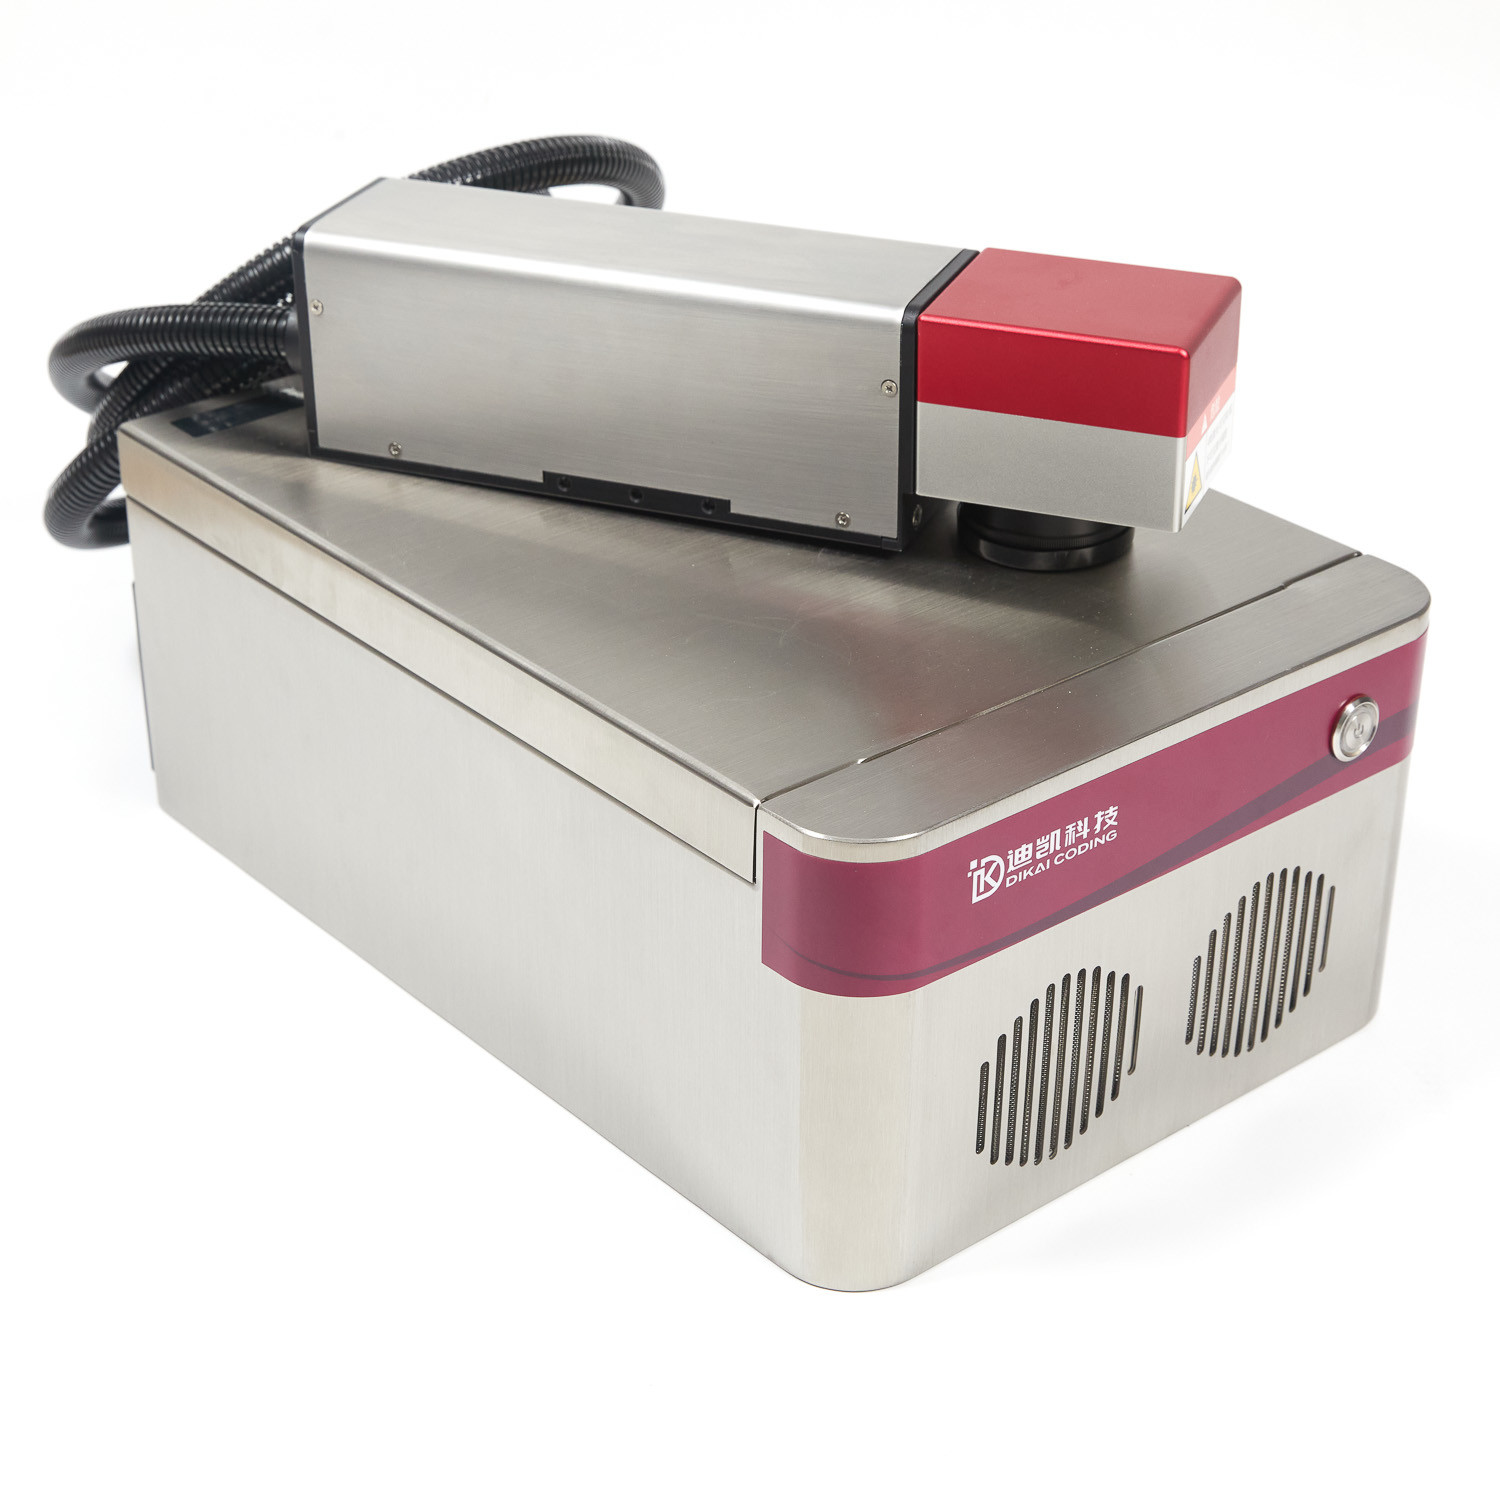 Dikai IP65 20w Fiber Laser Marking Machine Engraver Air Cooling